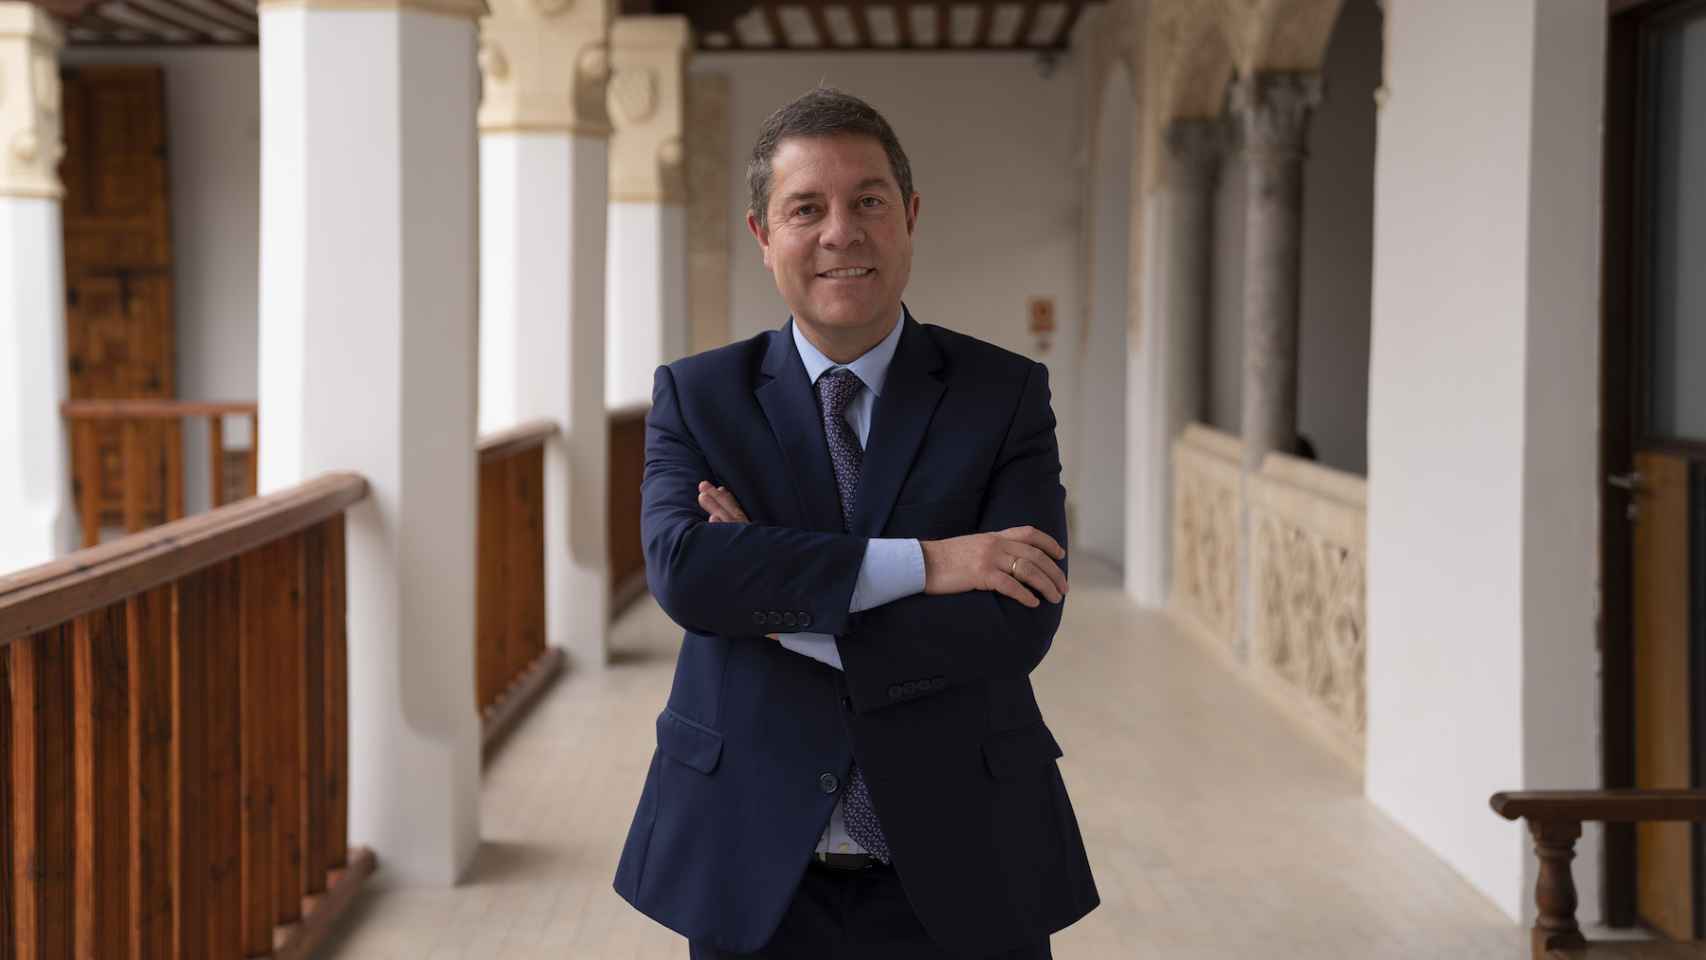 El presidente de Castilla-La Mancha, después de la entrevista, en el palacio de Fuensalida.